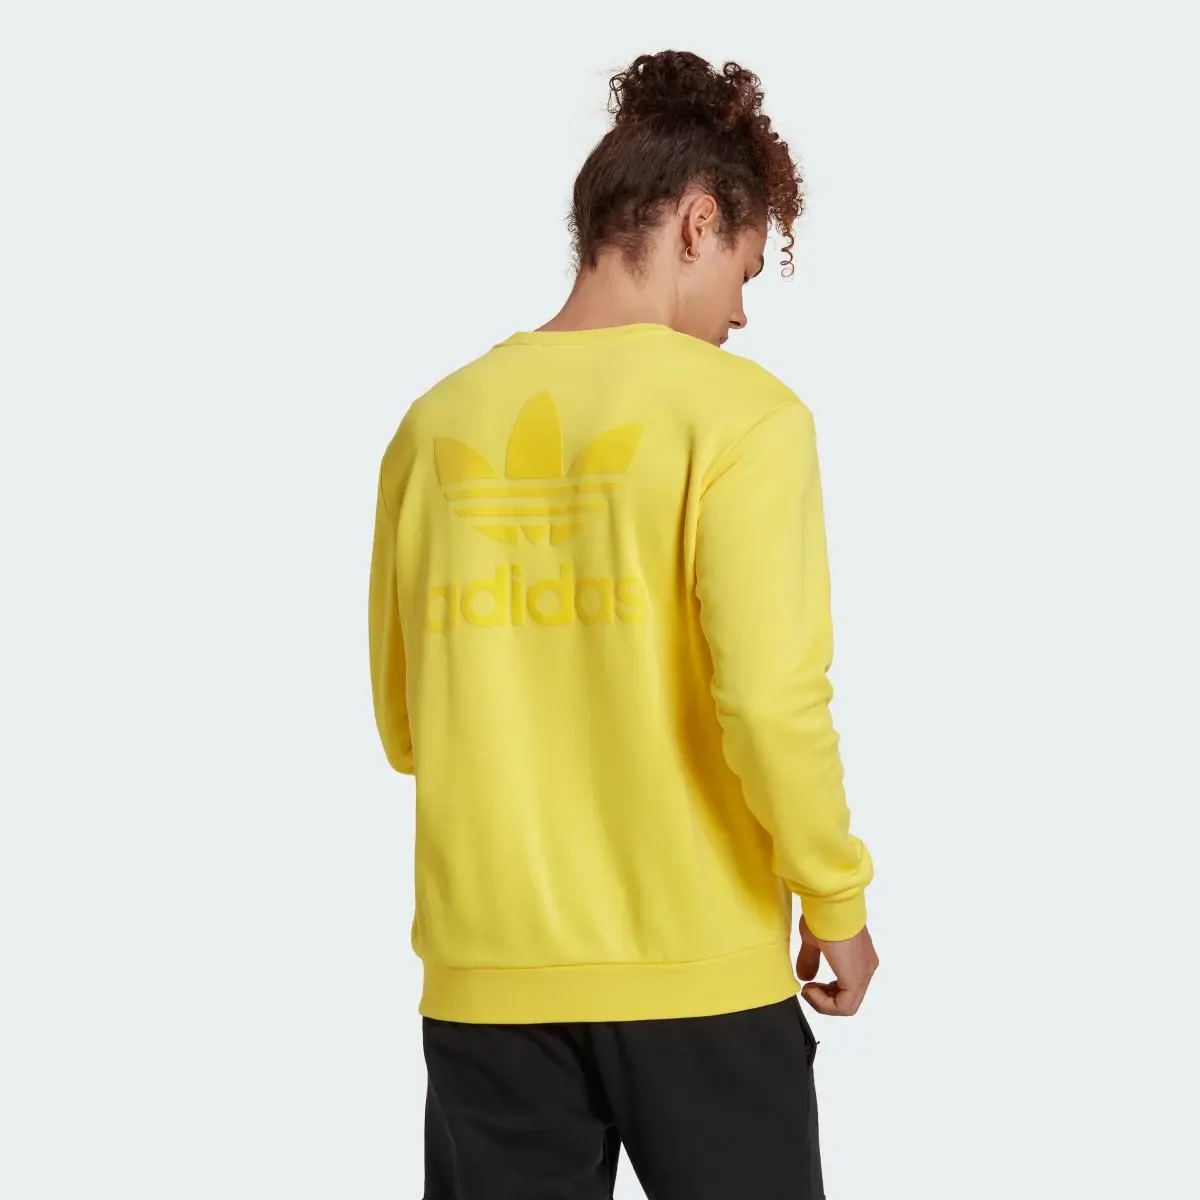 Adidas Trefoil Series Street Sweatshirt. 3